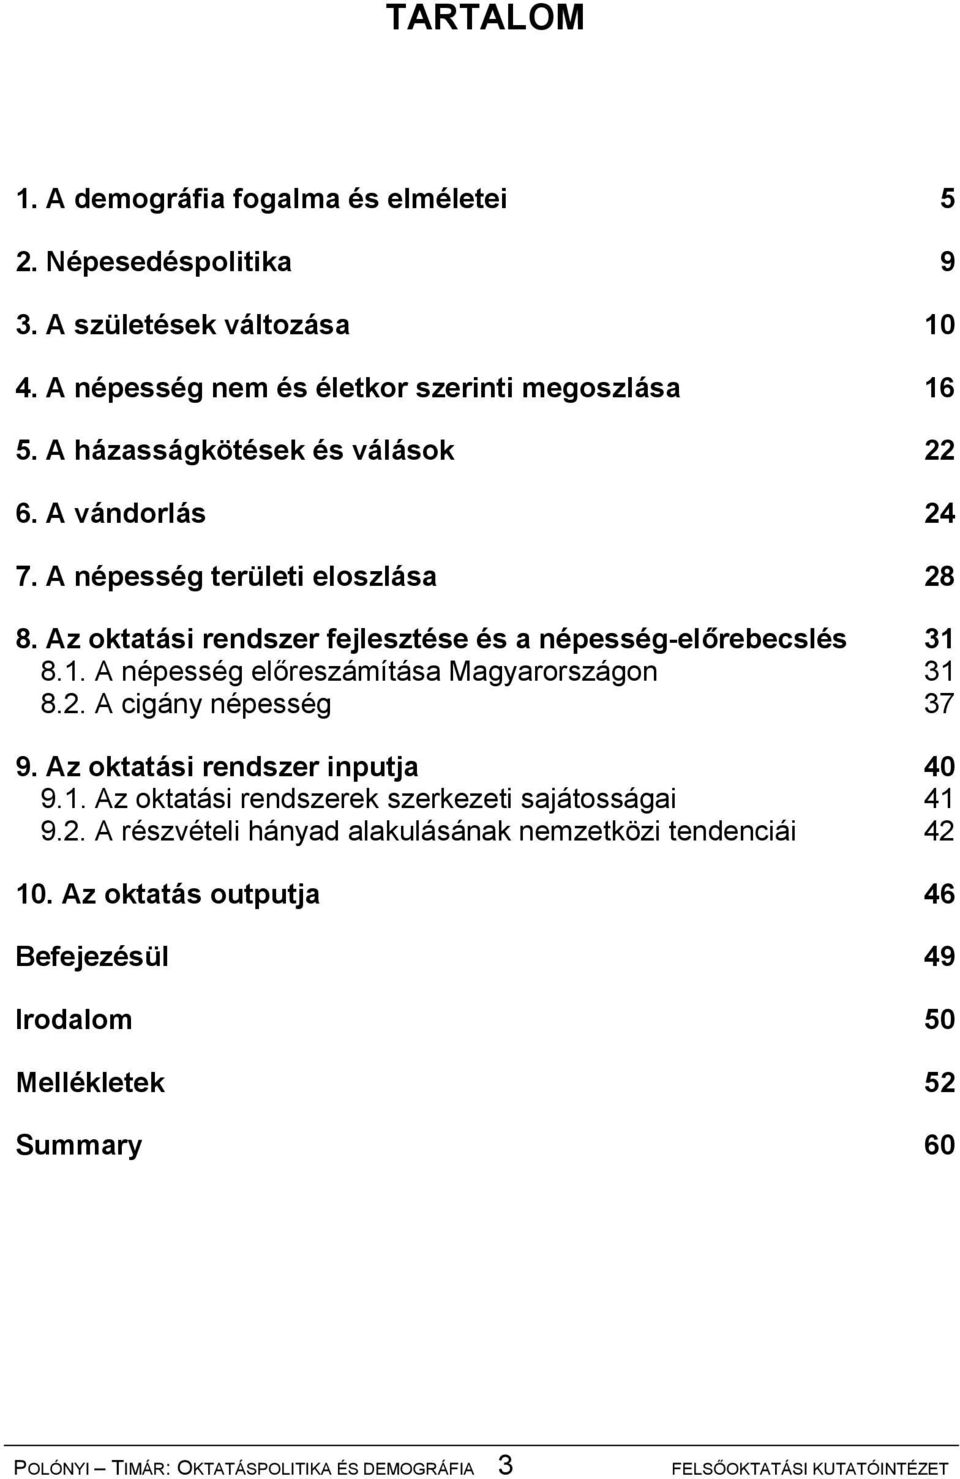 8.1. A népesség előreszámítása Magyarországon 31 8.2. A cigány népesség 37 9. Az oktatási rendszer inputja 40 9.1. Az oktatási rendszerek szerkezeti sajátosságai 41 9.